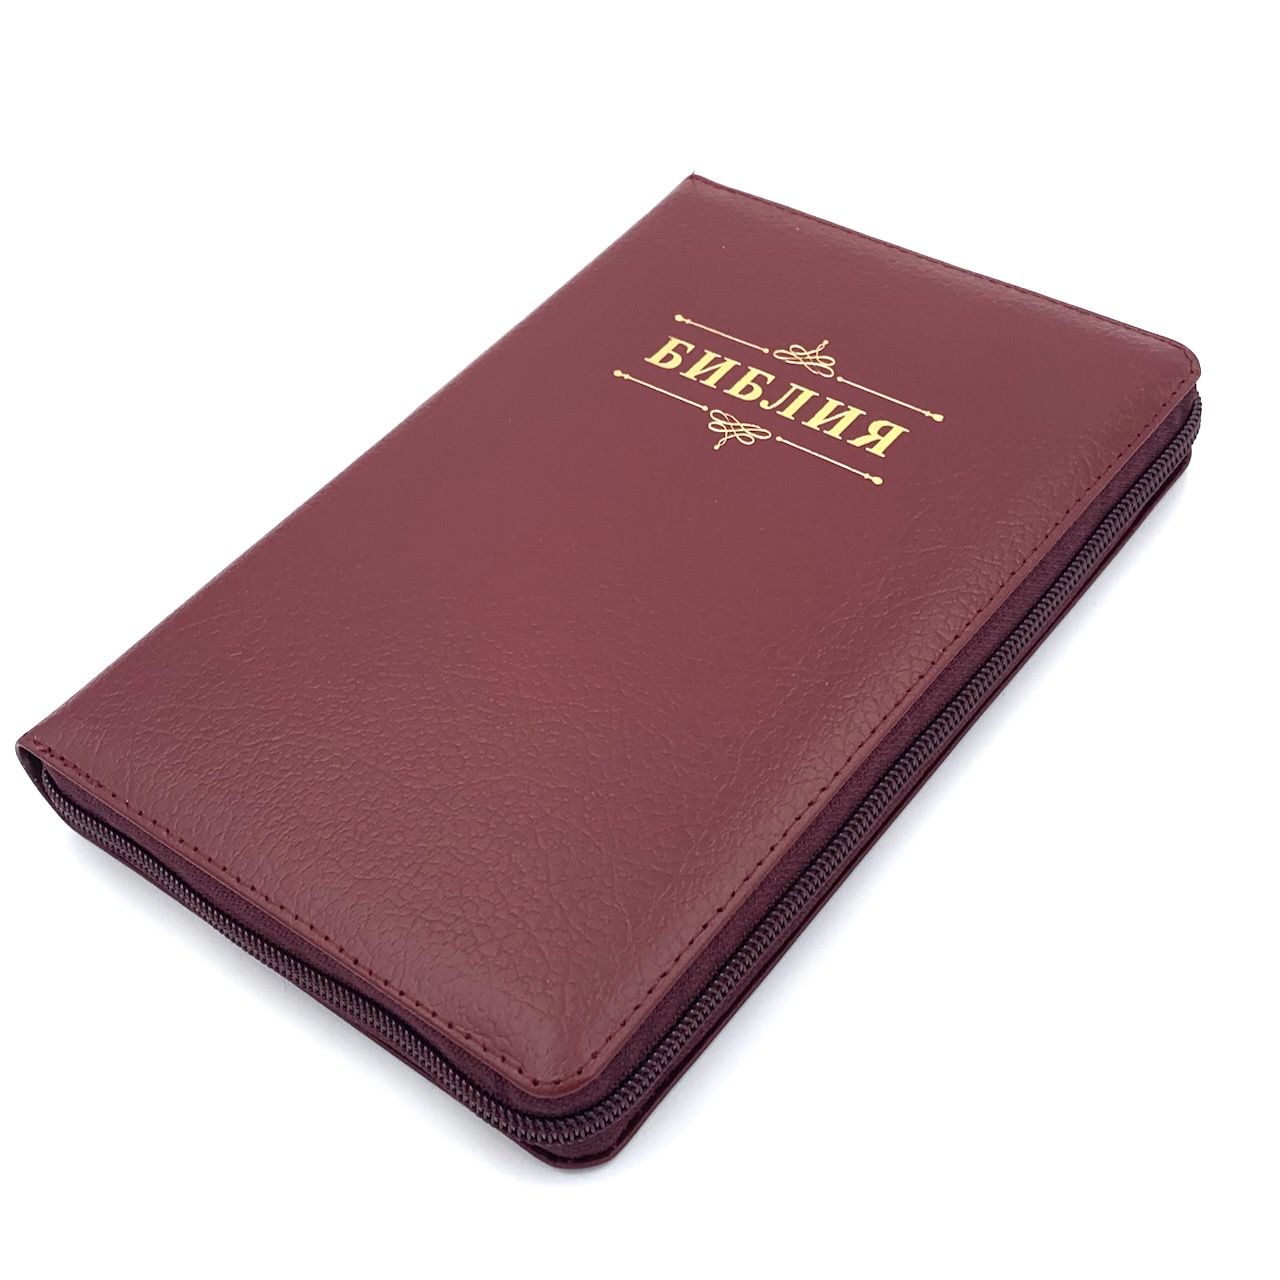 Библия 053z код B3 надпись "Библия", кожаный переплет на молнии, цвет бордо пятнистый, формат 140*202 мм